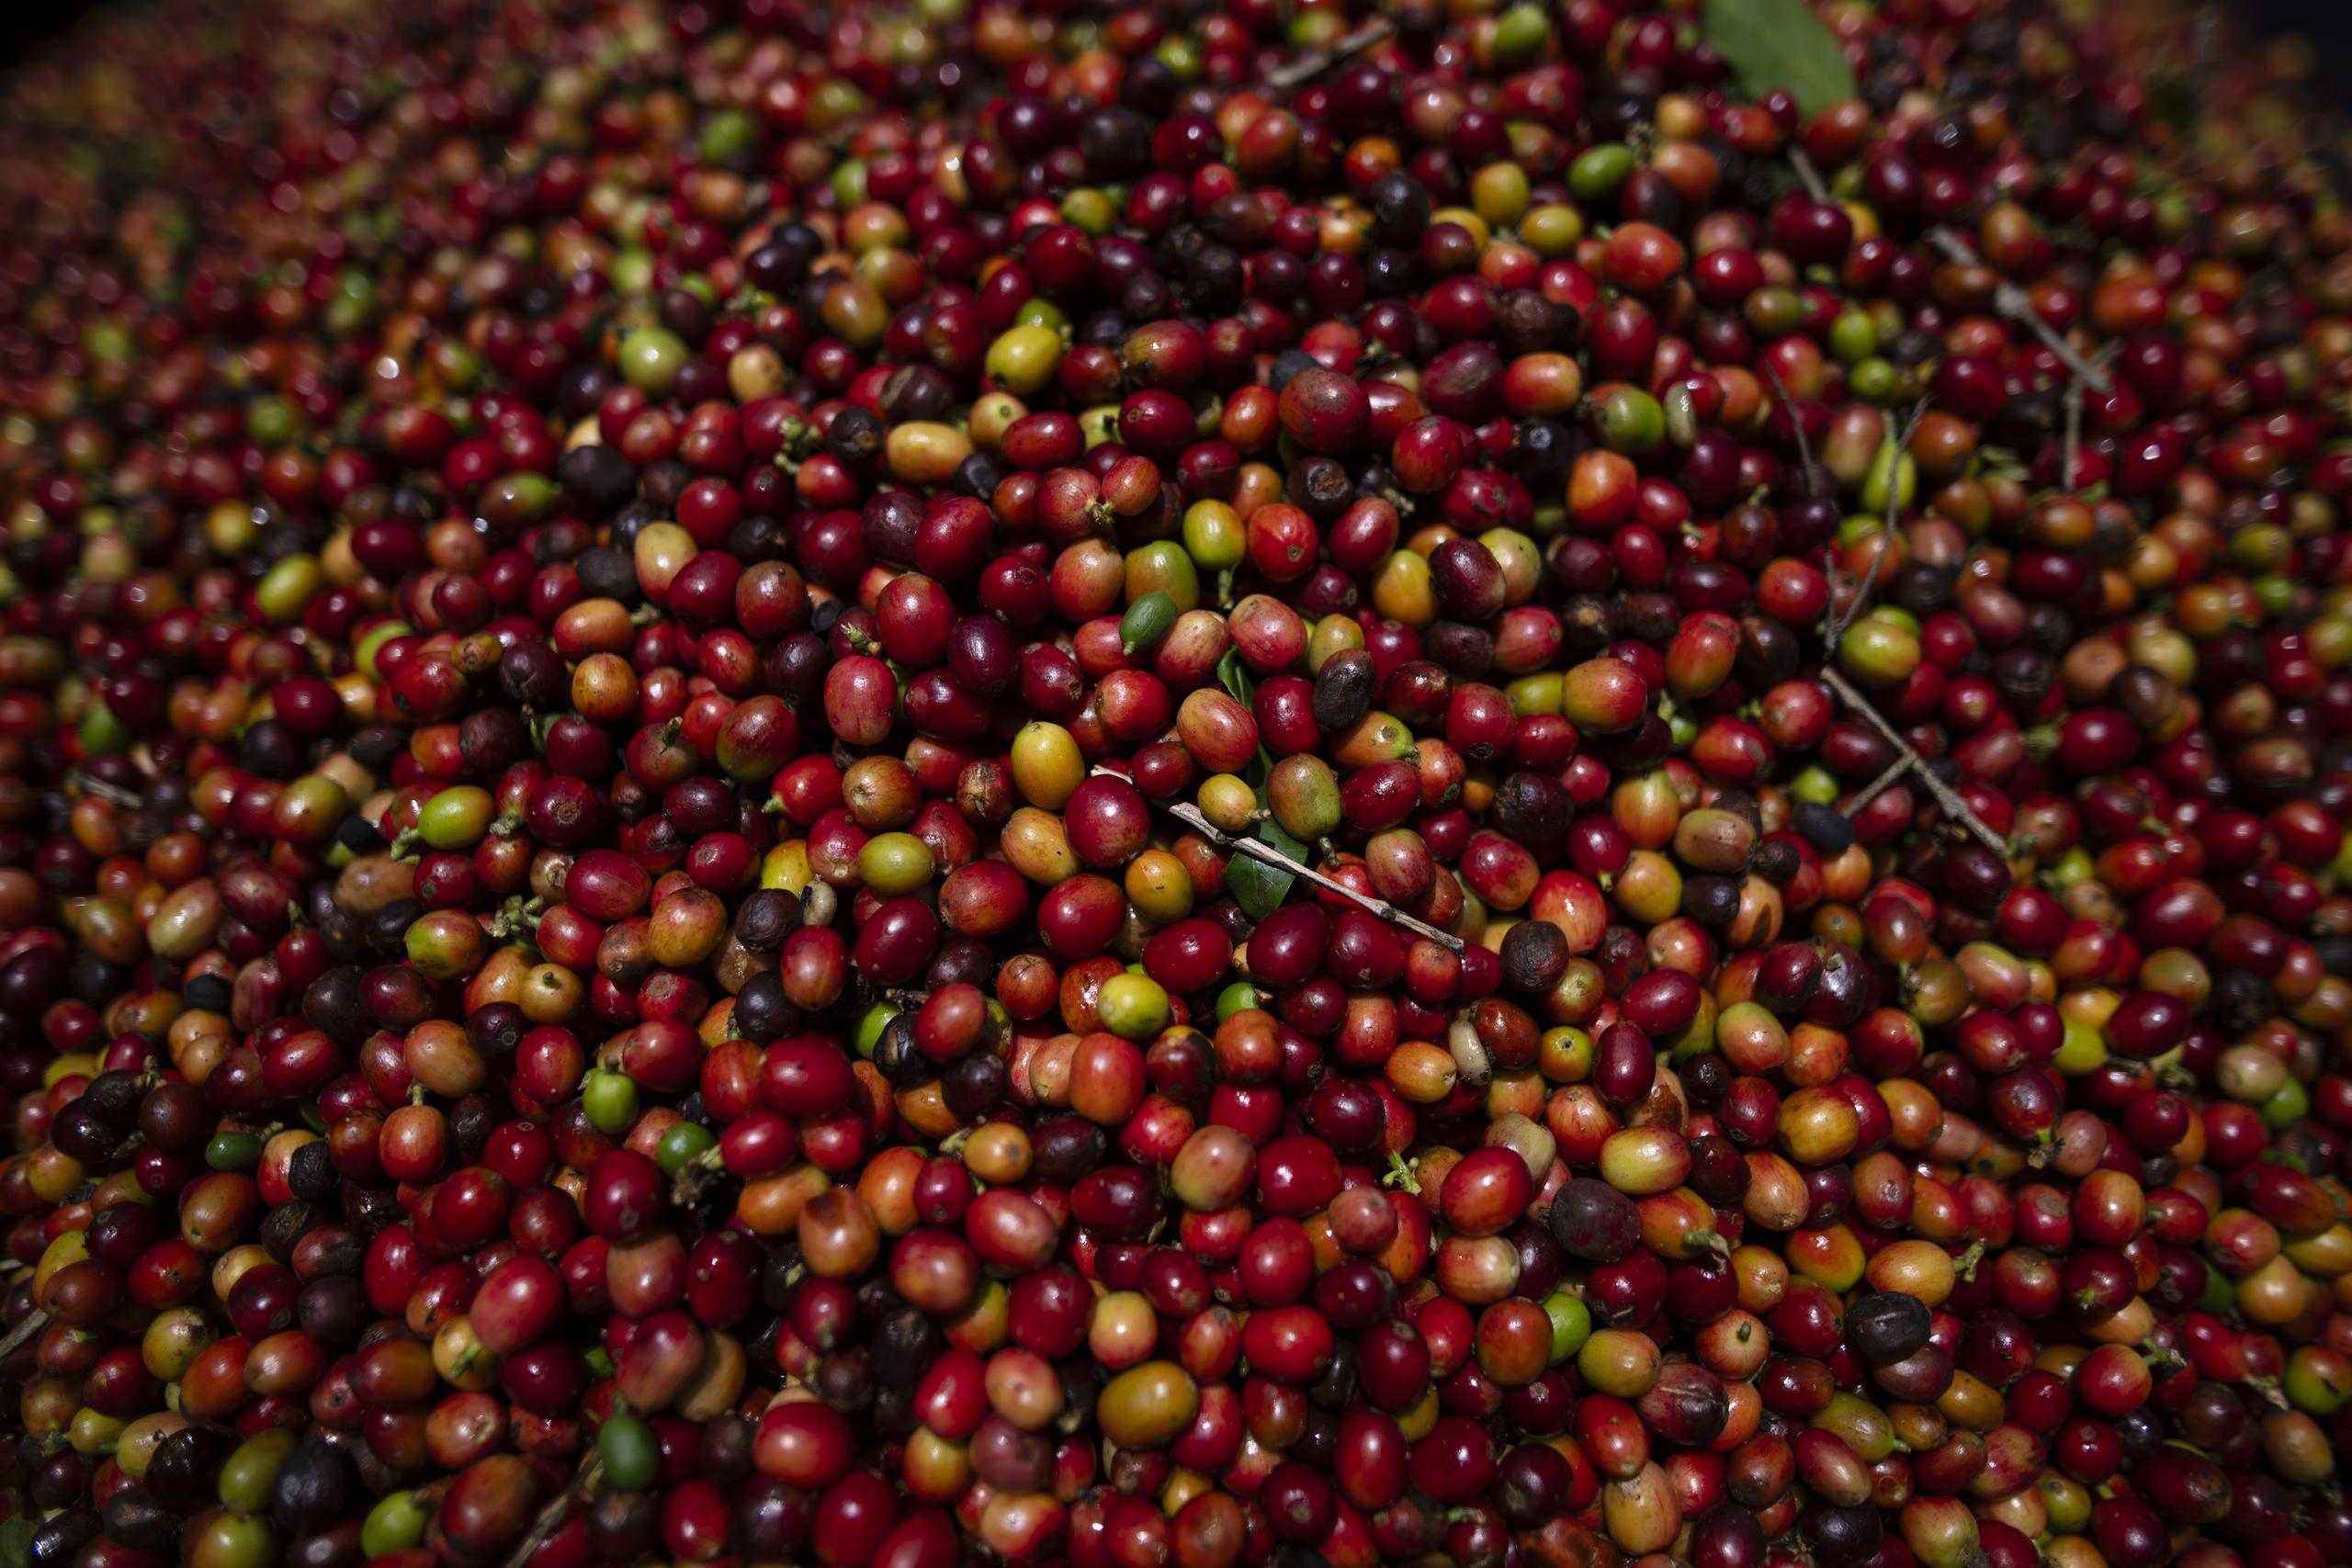 La mano de obra, tan necesaria para el café, especialmente en tiempo de cosecha, escasea en Puerto Rico y es una de los principales problemas que enfrenta la industria.